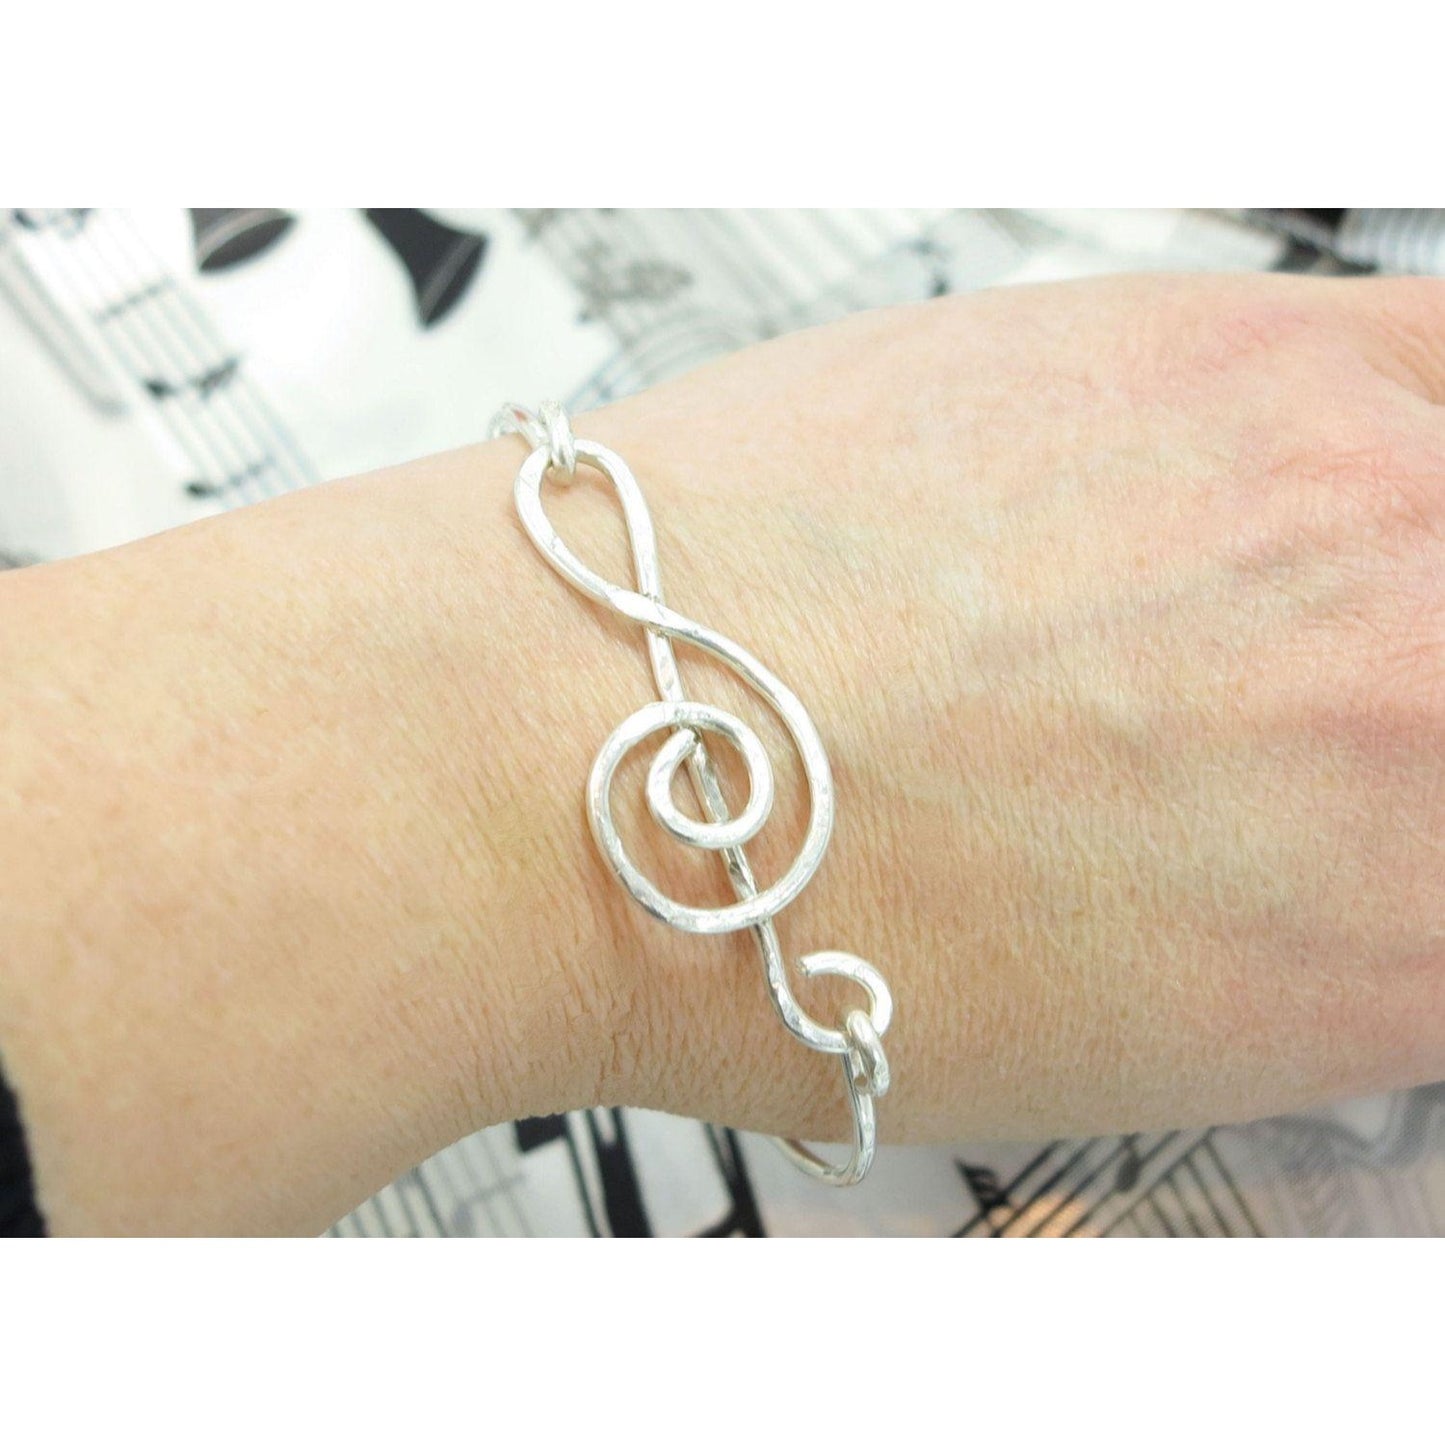 Treble Clef Bracelet,  Musical Note Bangle Bracelet, Gift for Musician Teacher